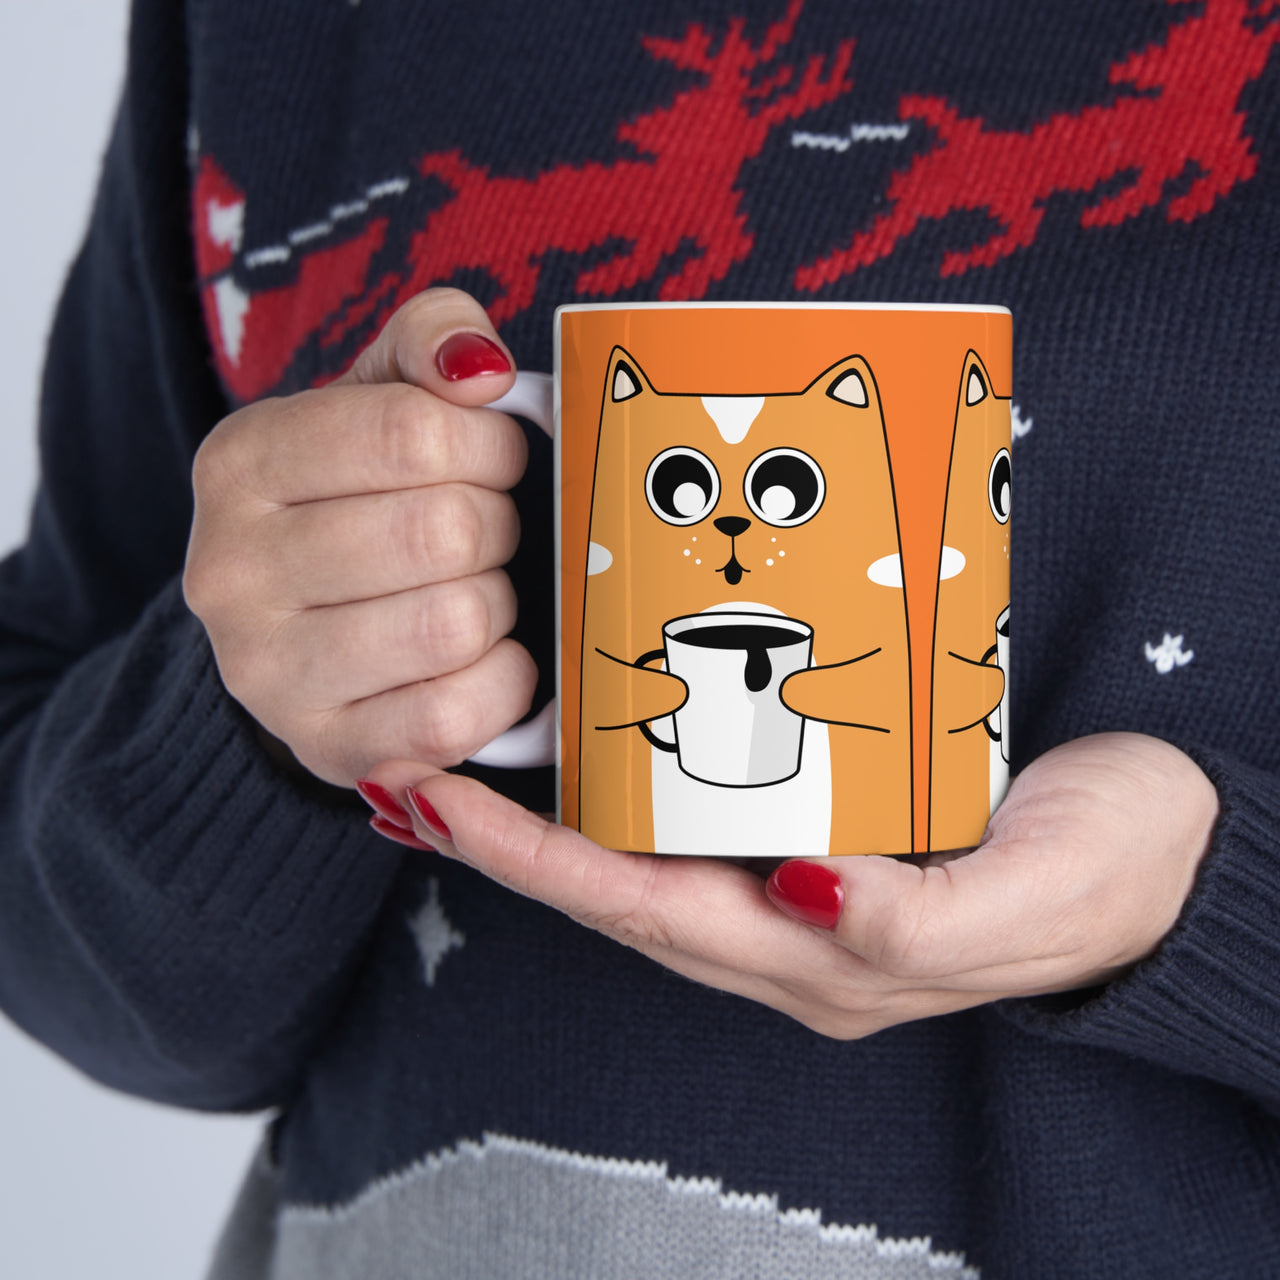 Quirky Cat and Coffee 🐱 Ceramic Mug 11oz